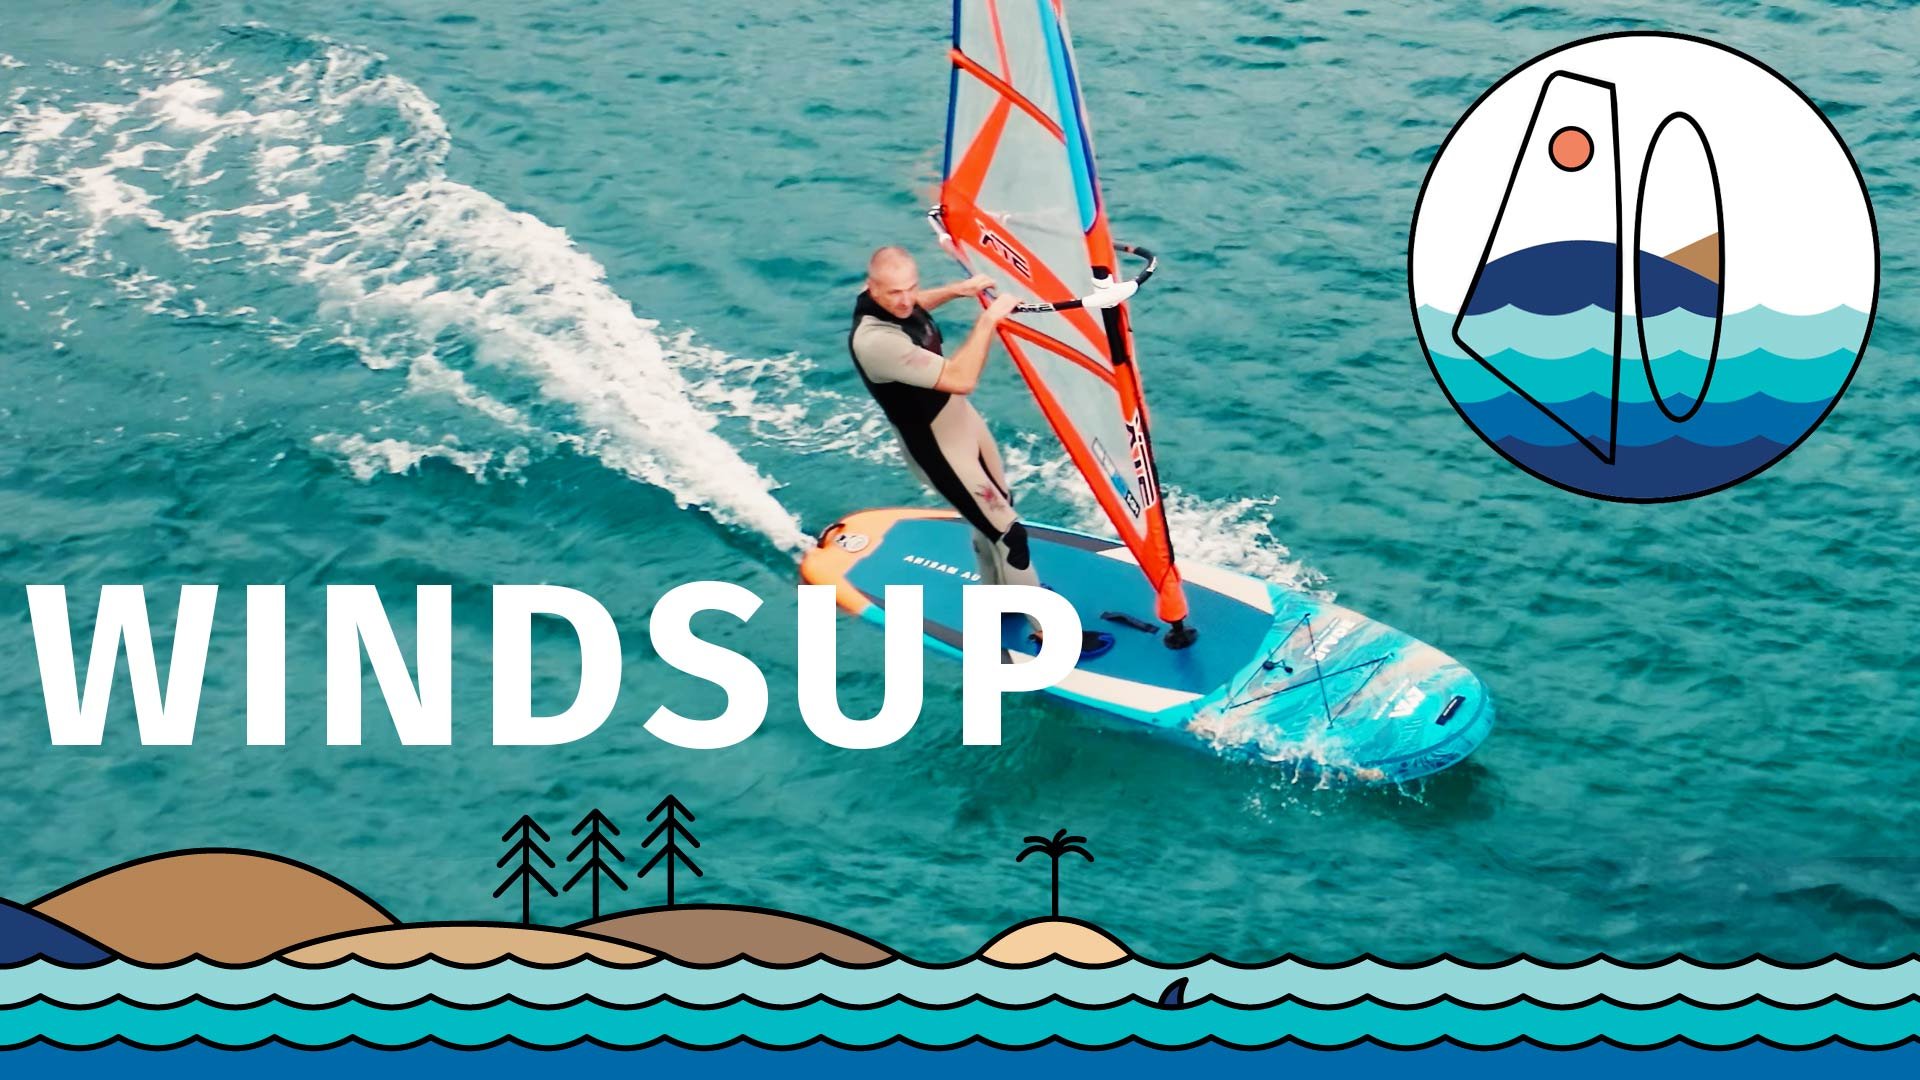 Windsurfing, WindSUP a nafukovací?? Ano!